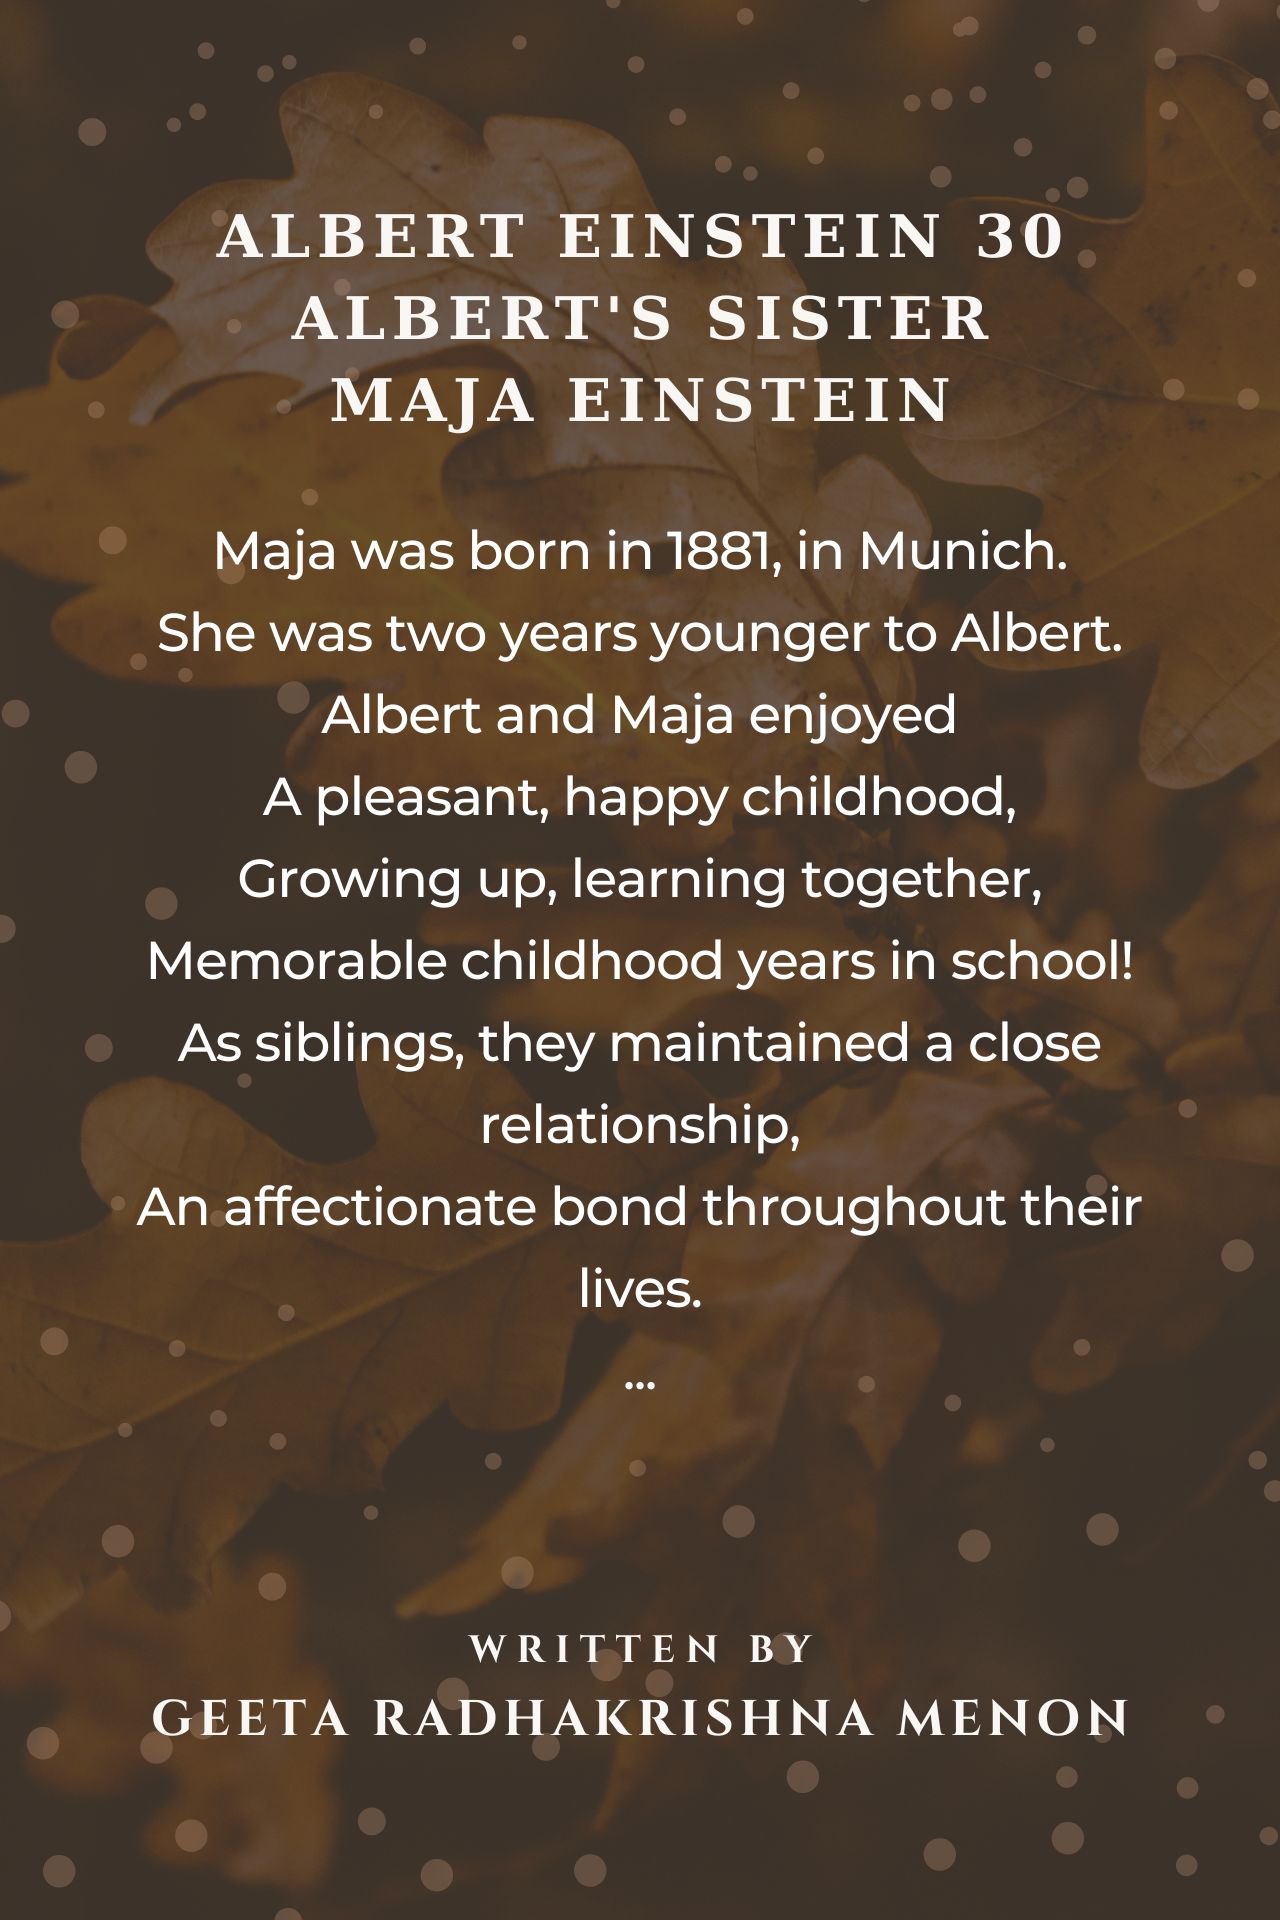 Albert Einstein 30 - Albert's Sister - Maja Einstein